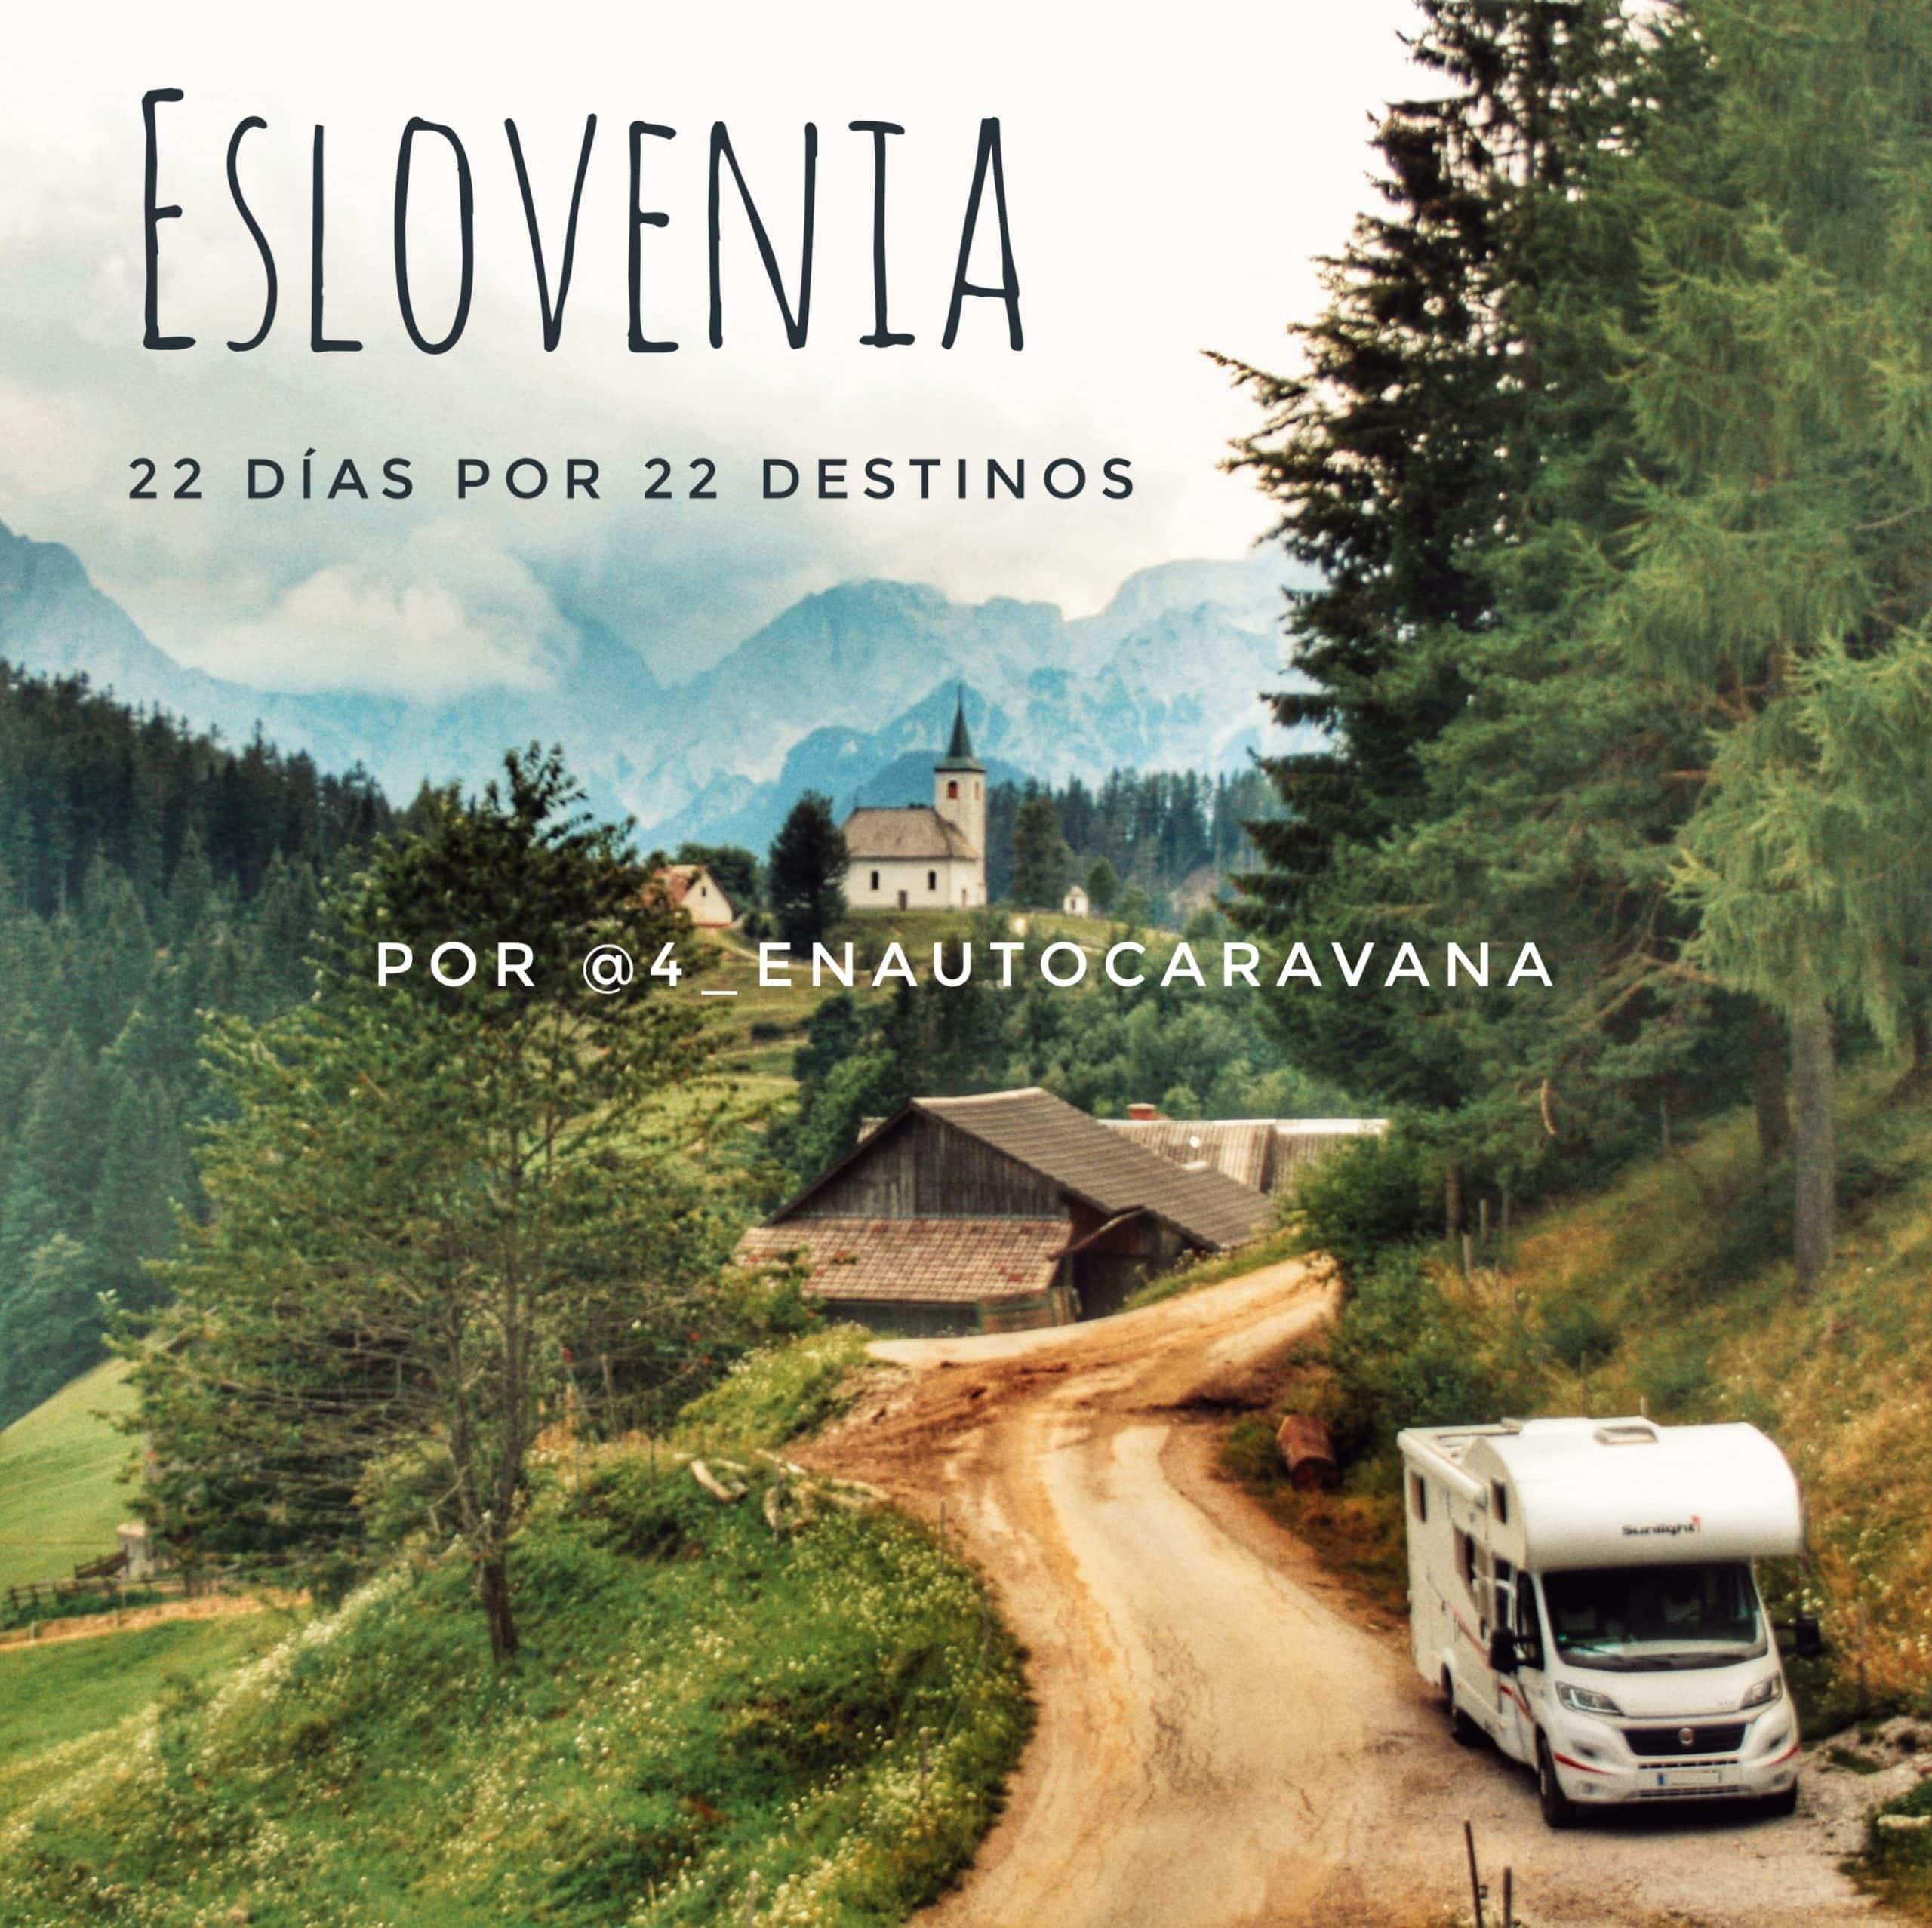 Lee más sobre el artículo Eslovenia en autocaravana a través de 22 destinos por @4_enautocaravana